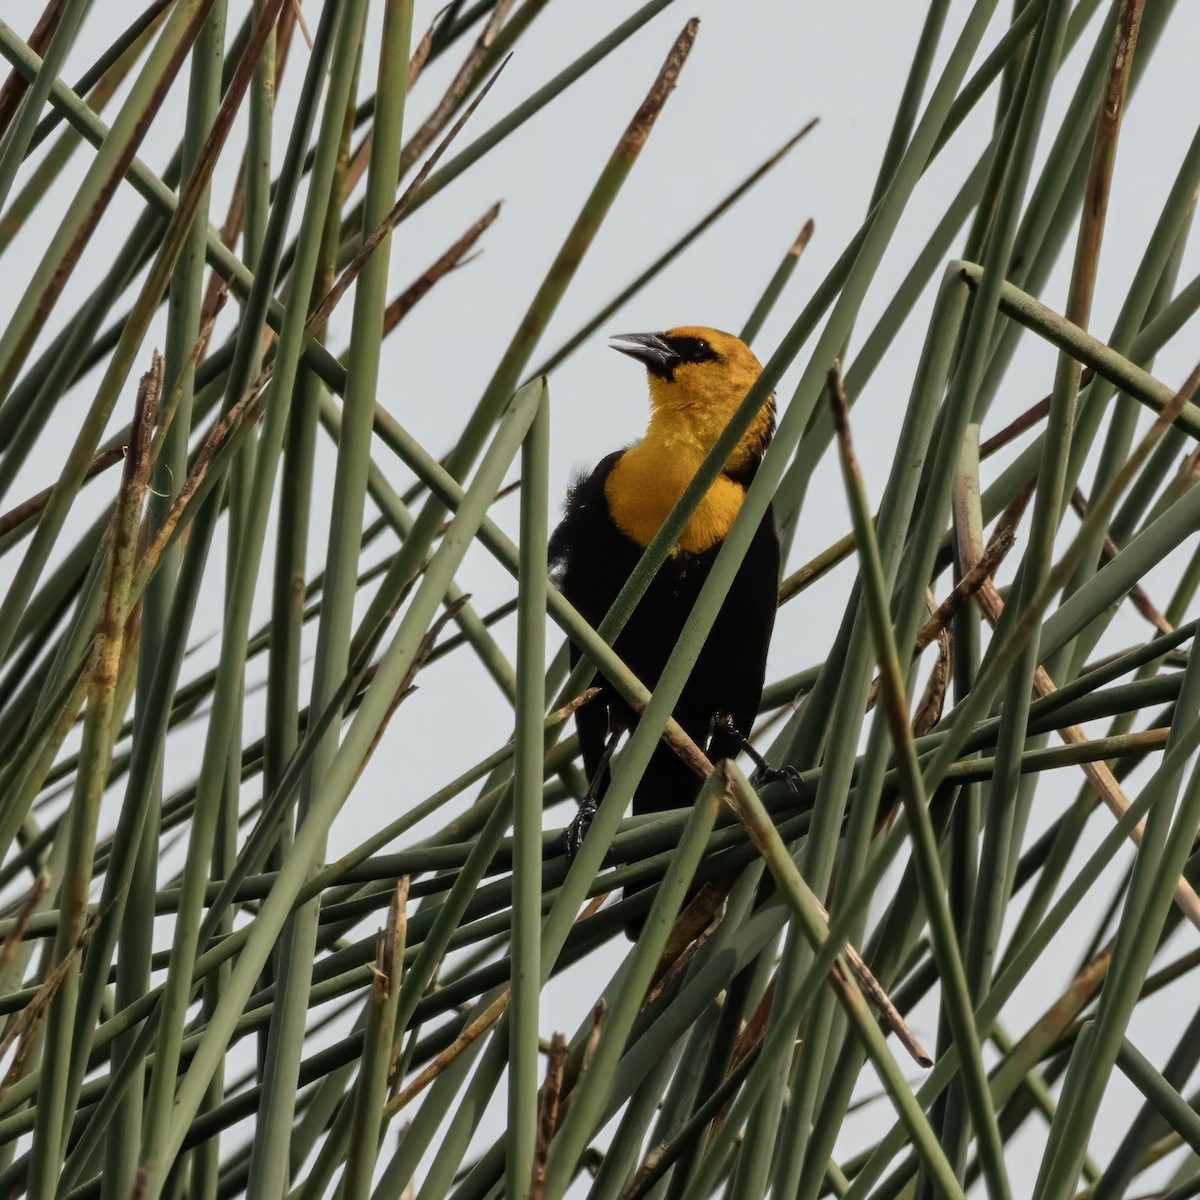 Yellow-headed Blackbird - marlin harms